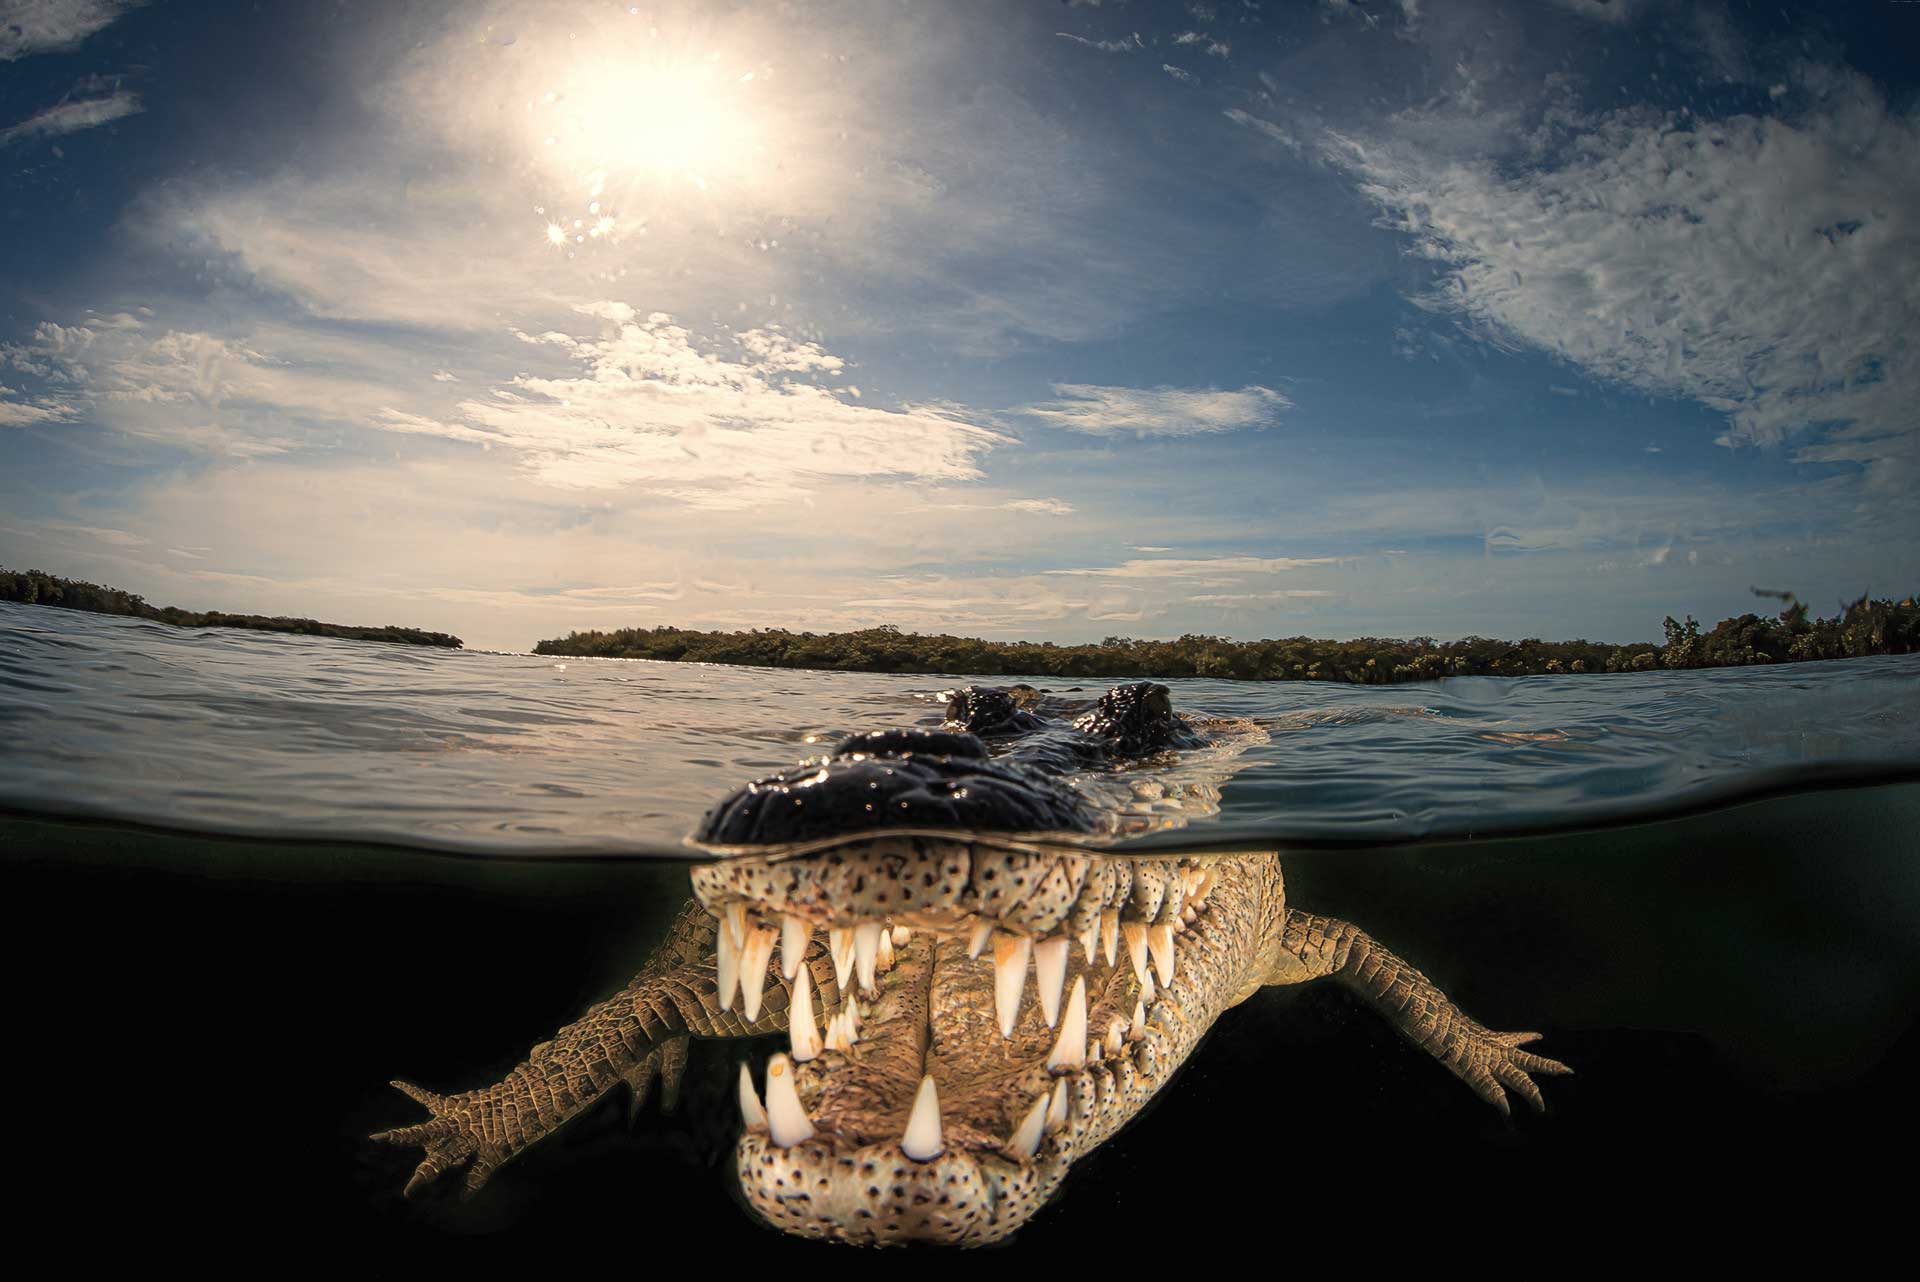 A crocodile captured in Cuba